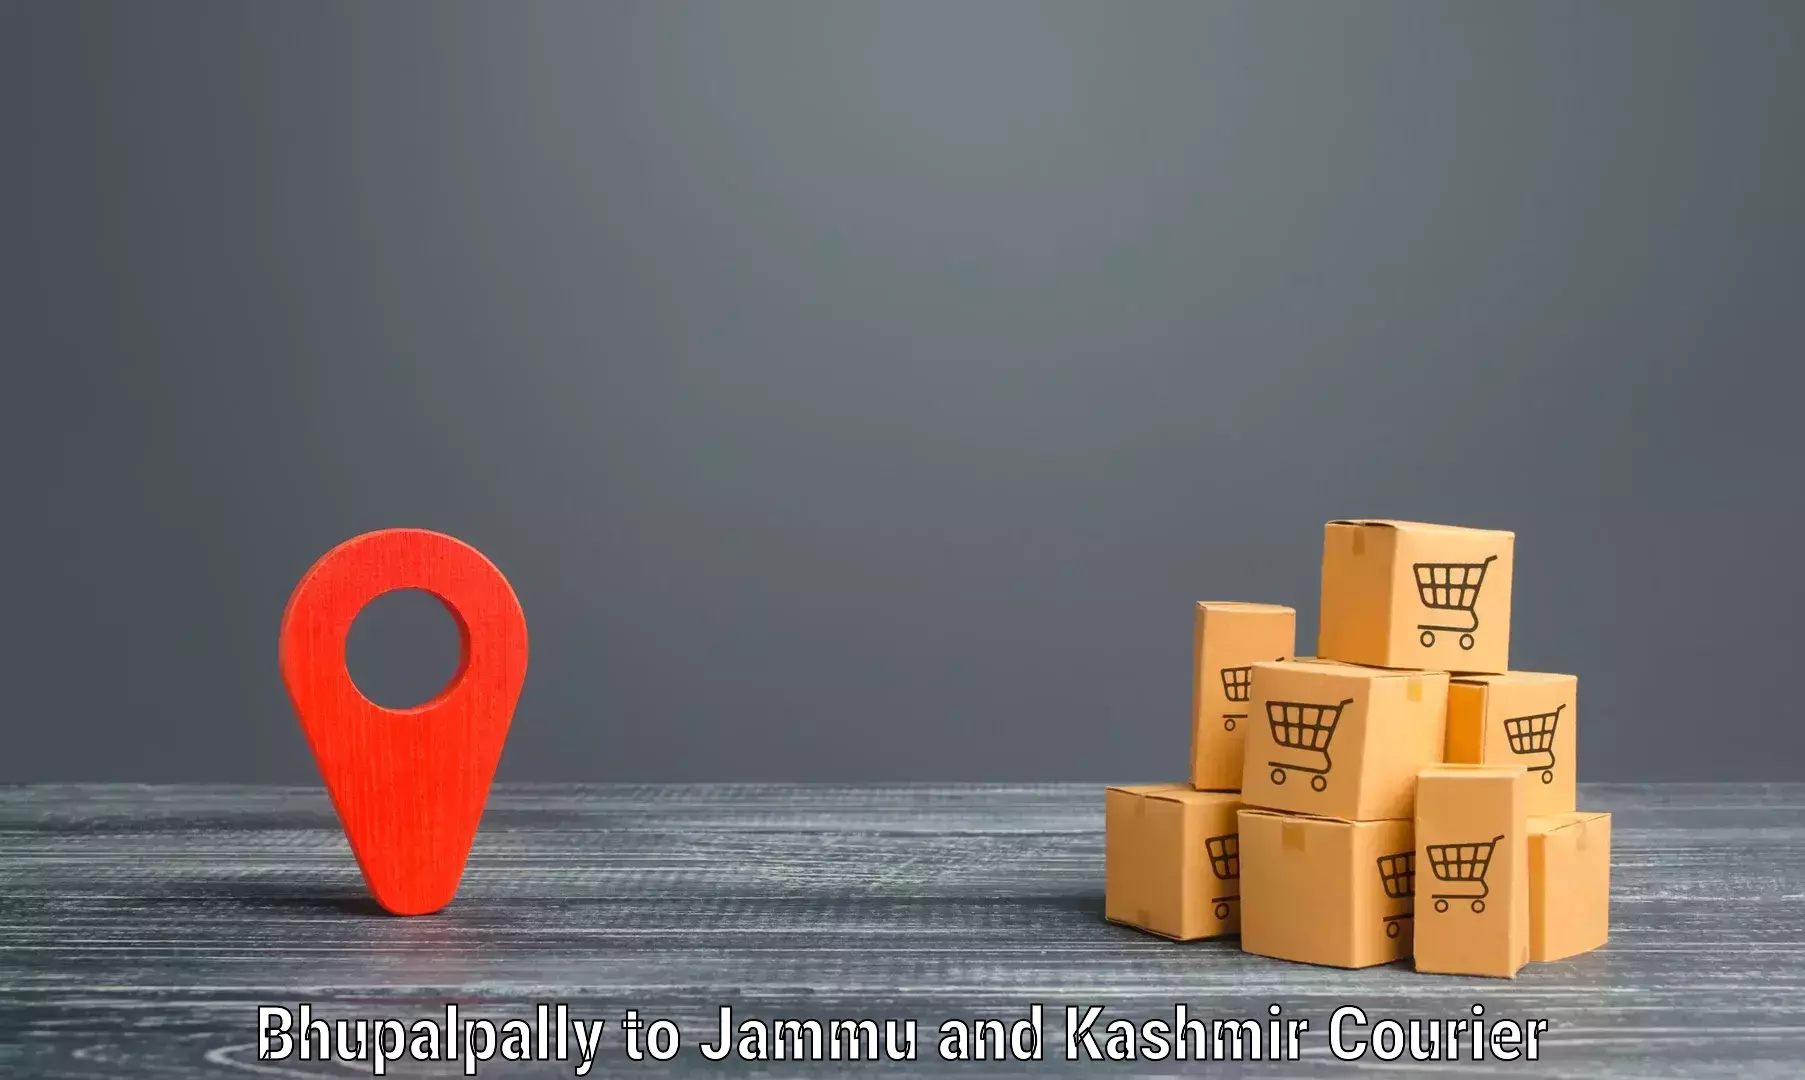 Customer-centric shipping Bhupalpally to Pulwama